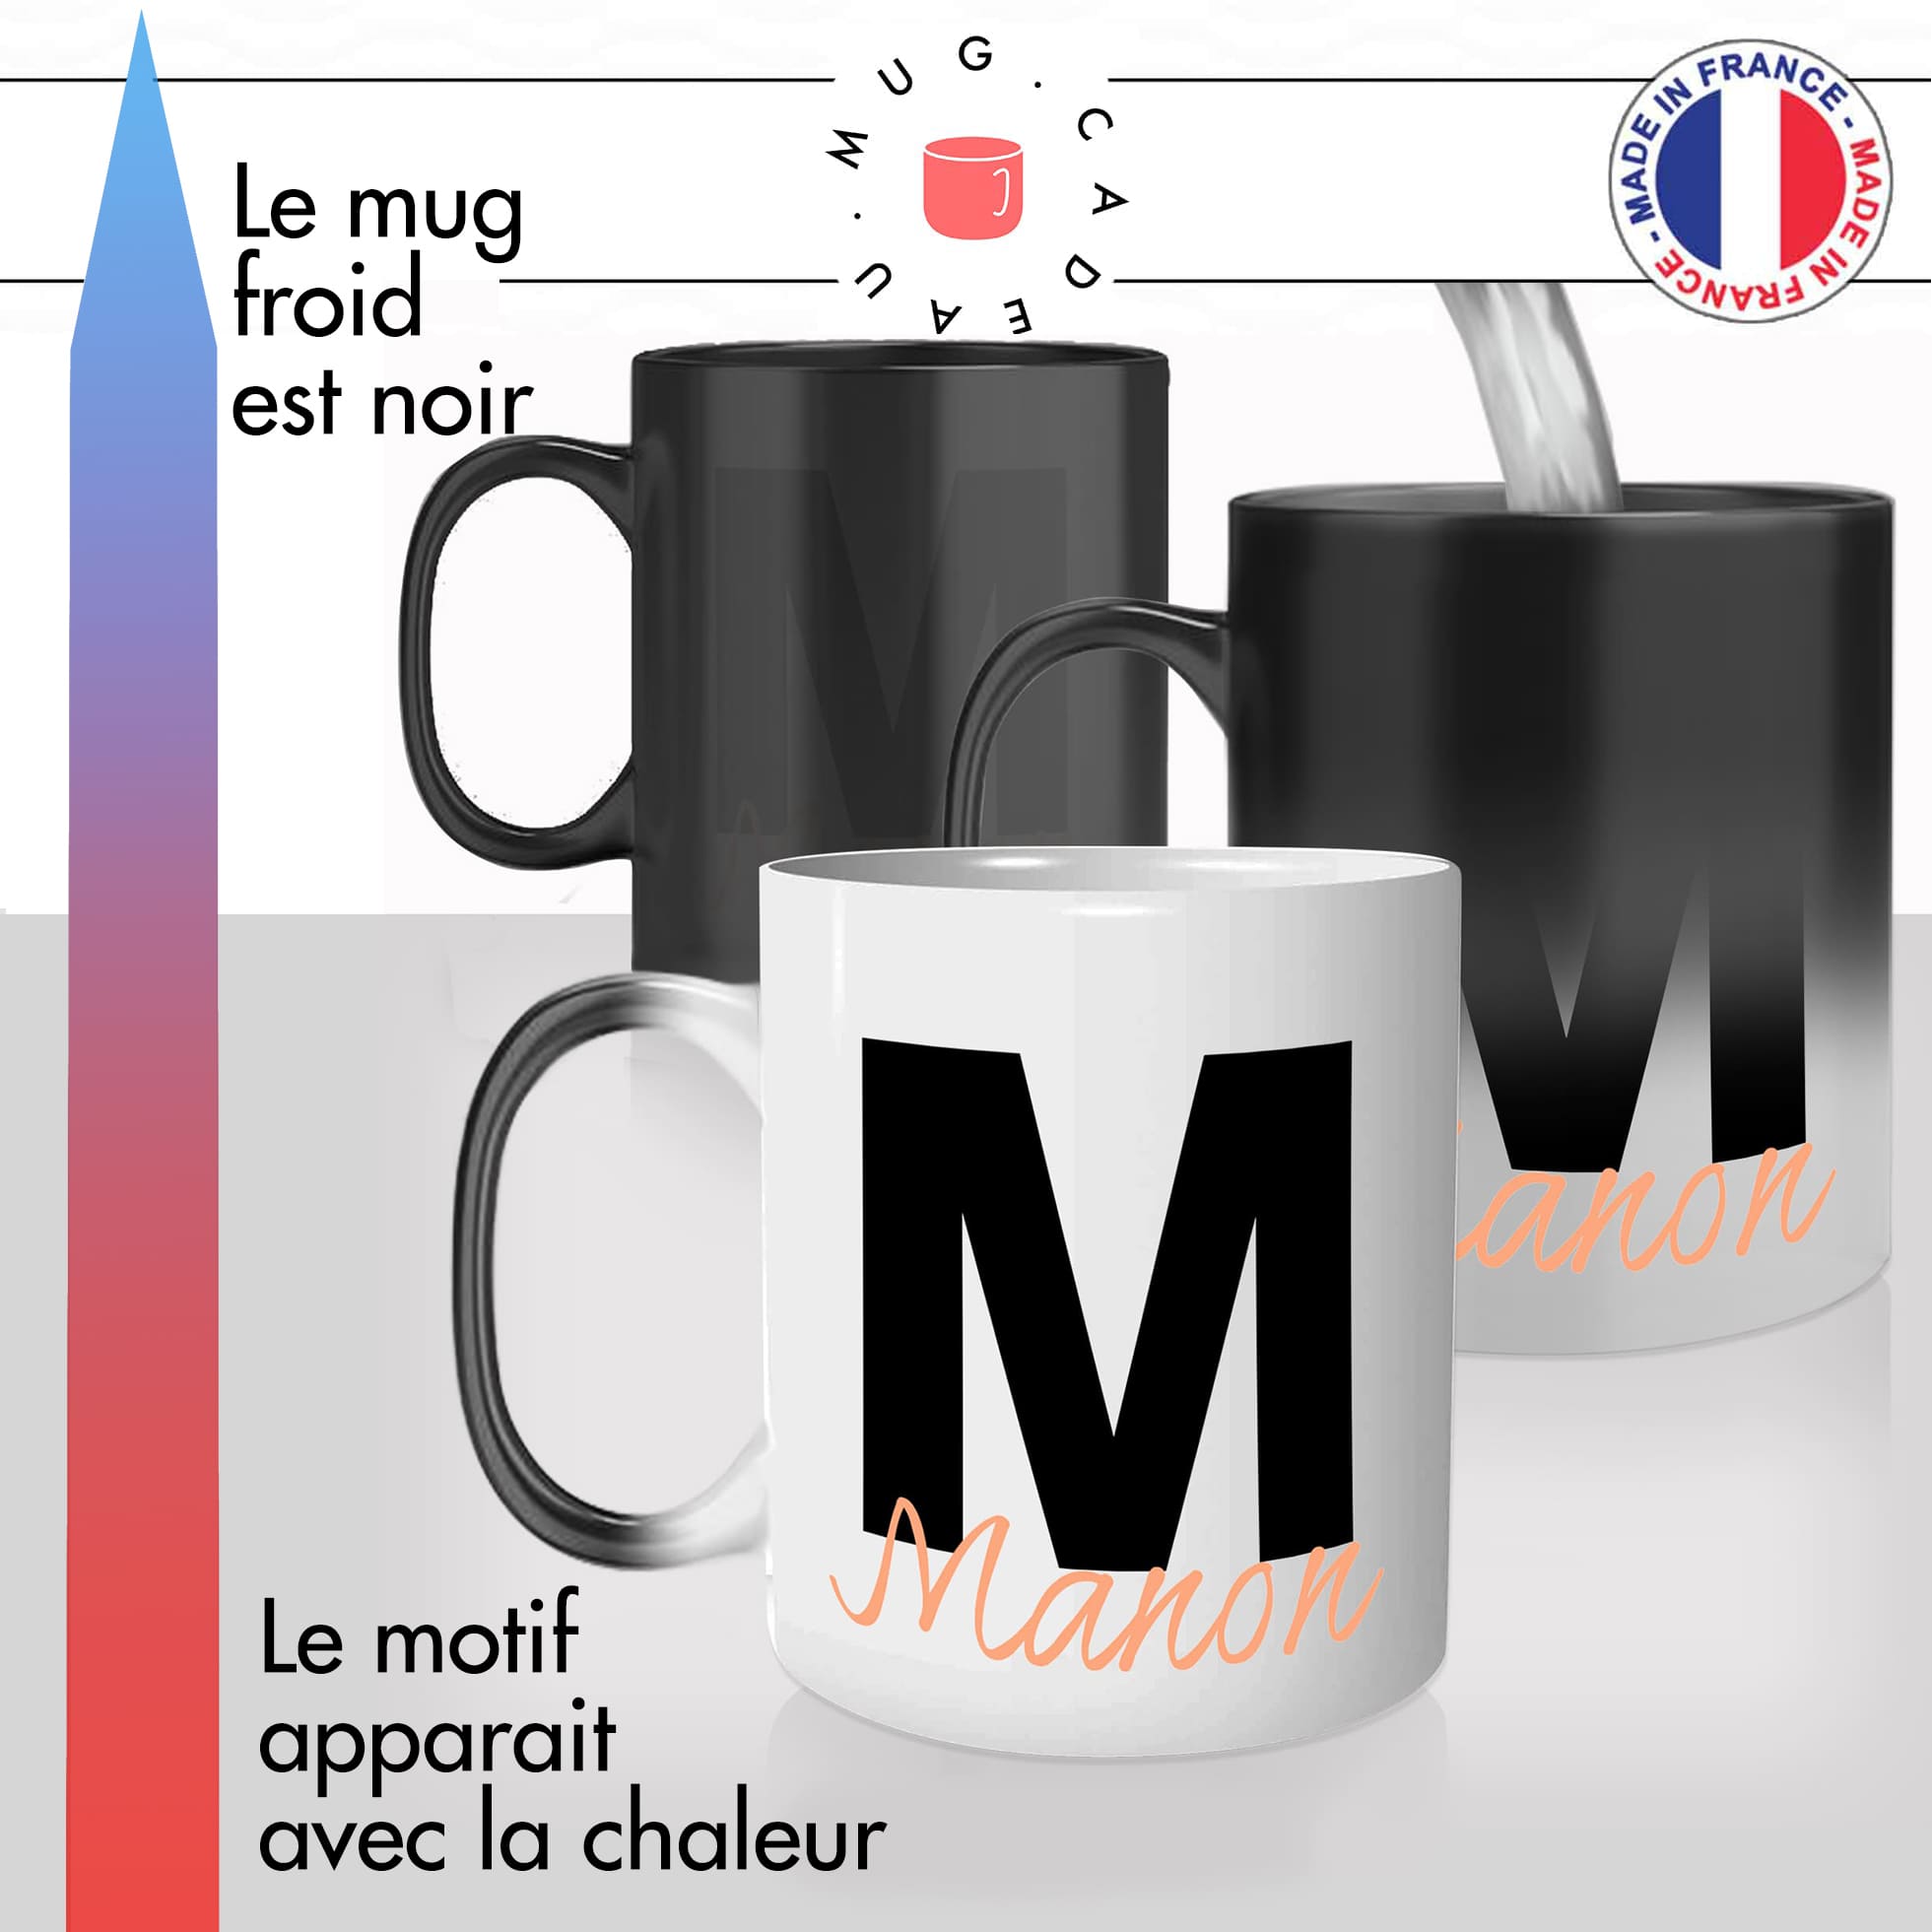 mug magique thermoréactif thermo chauffant personnalisé initiale de prenom personnalisable chacun son mugs idée cadeau